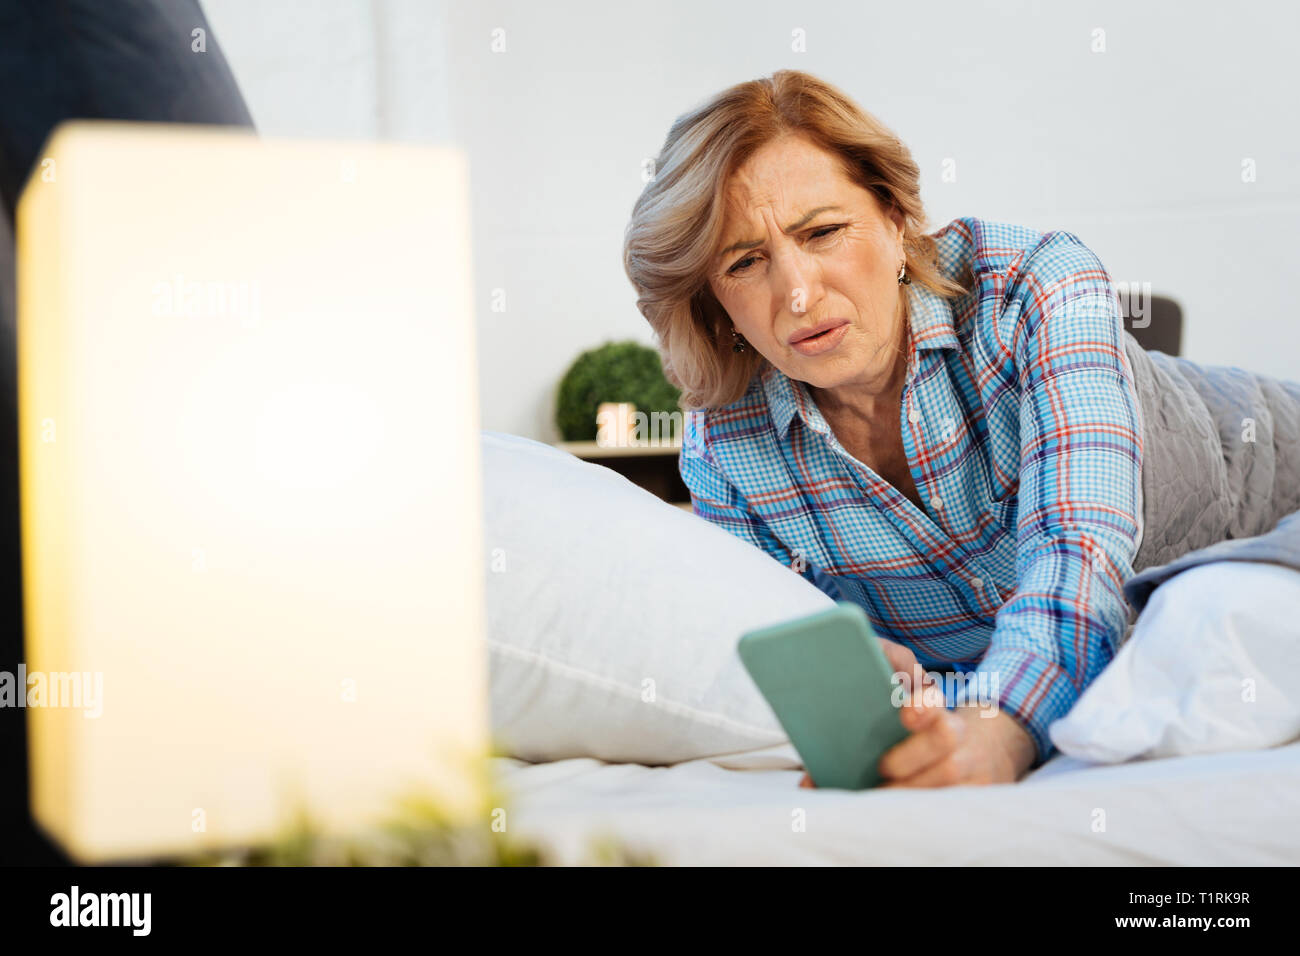 Verwirrt kurzhaarige erwachsenen Frau im hellen Pyjama suchen auf dem Bildschirm Stockfoto